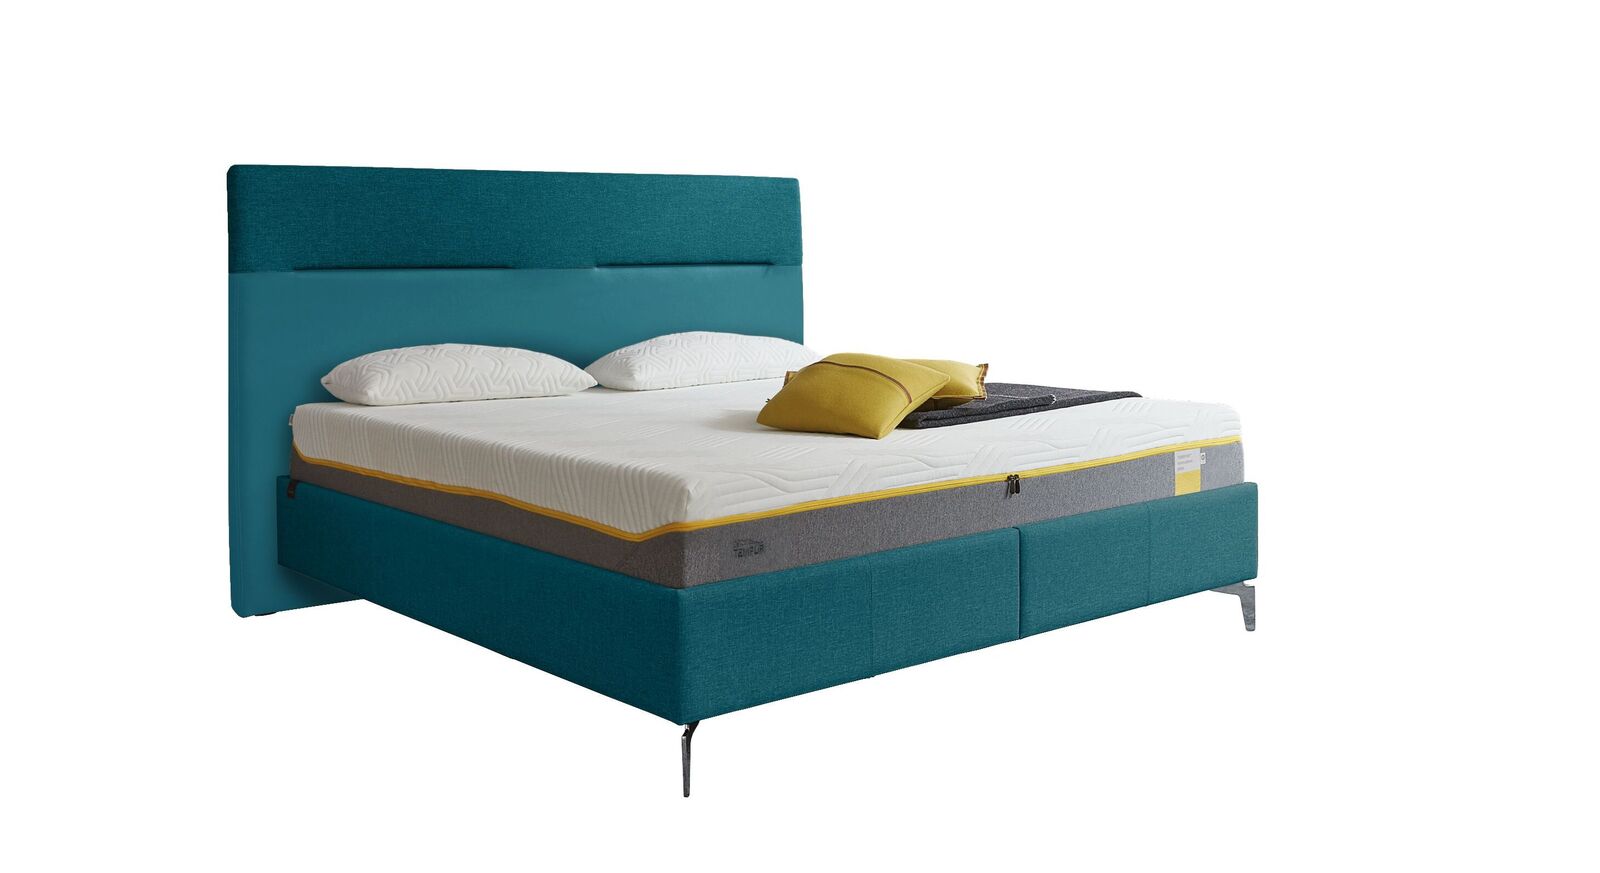 TEMPUR Bett Relax Texture mit Bezug in Webstoff und Kunstleder in Türkis